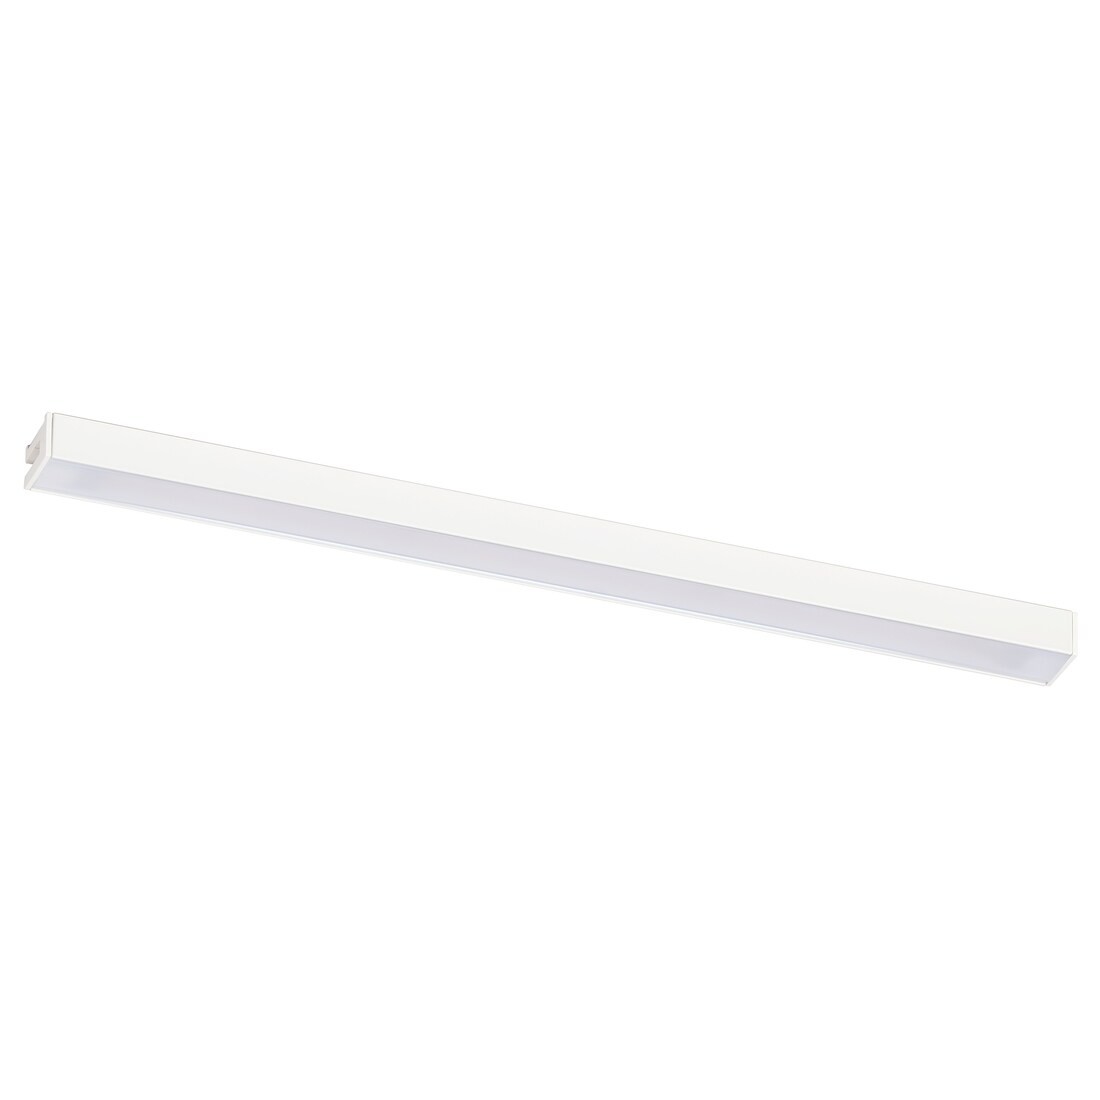 MITTLED МІТТЛЕД LED підсвітка для стільниці, з затемненням білий, 30 см